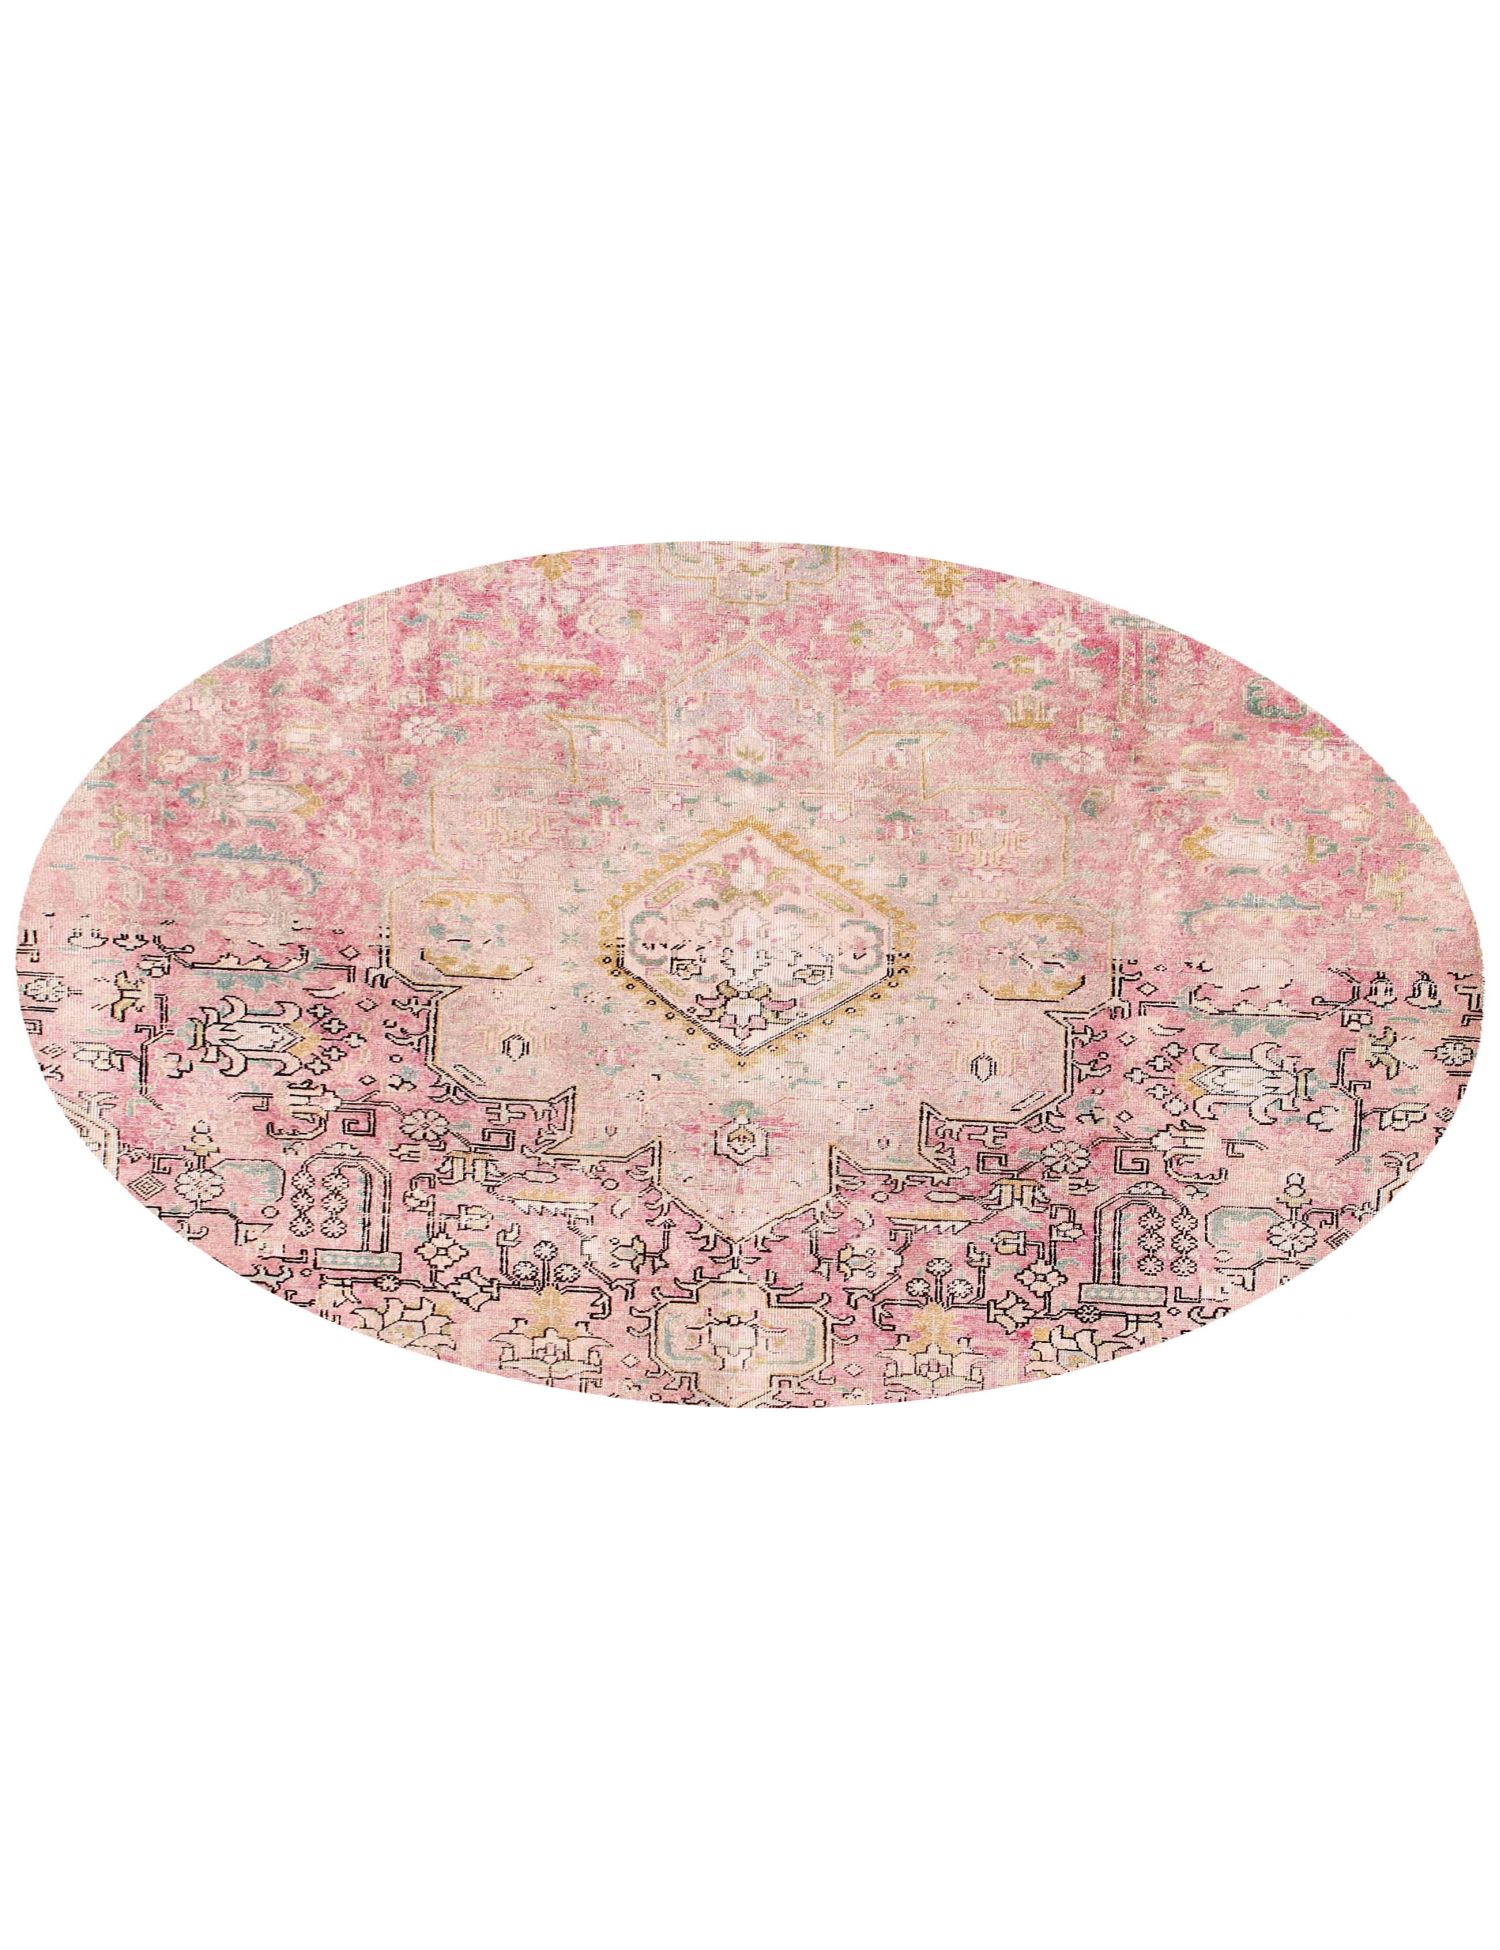 Rund  Vintage Teppich  rosa <br/>217 x 217 cm